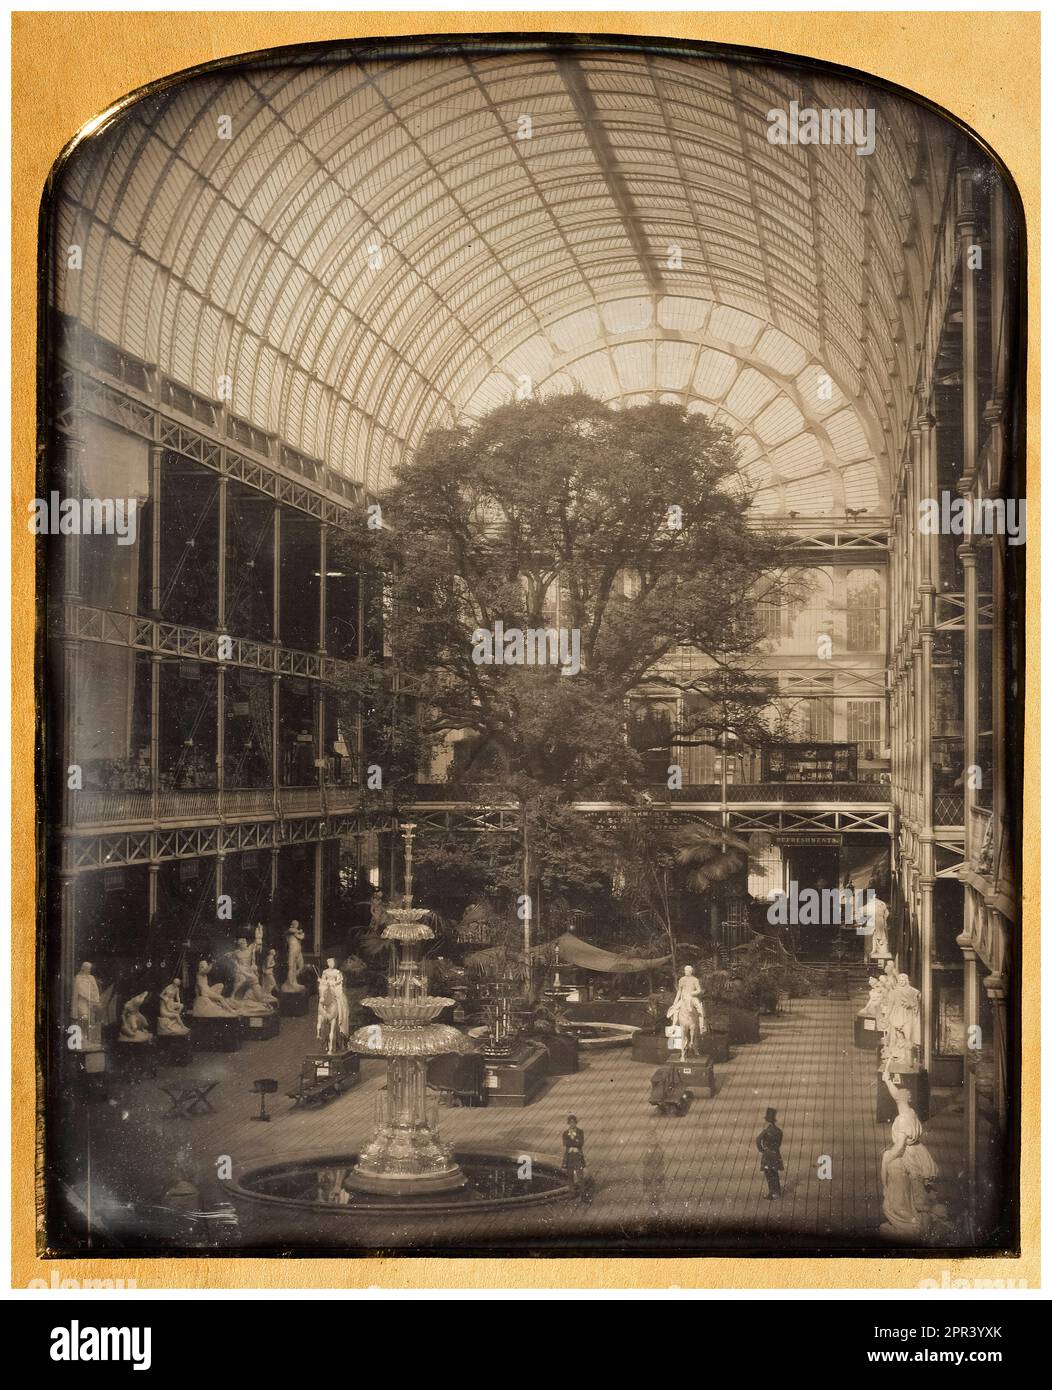 Innenansicht des Crystal Palace, erbaut für die Great Exhibition 1851 in London, England, Daguerreotype Foto von John Jabez Edwin Mayall, 1851 Stockfoto